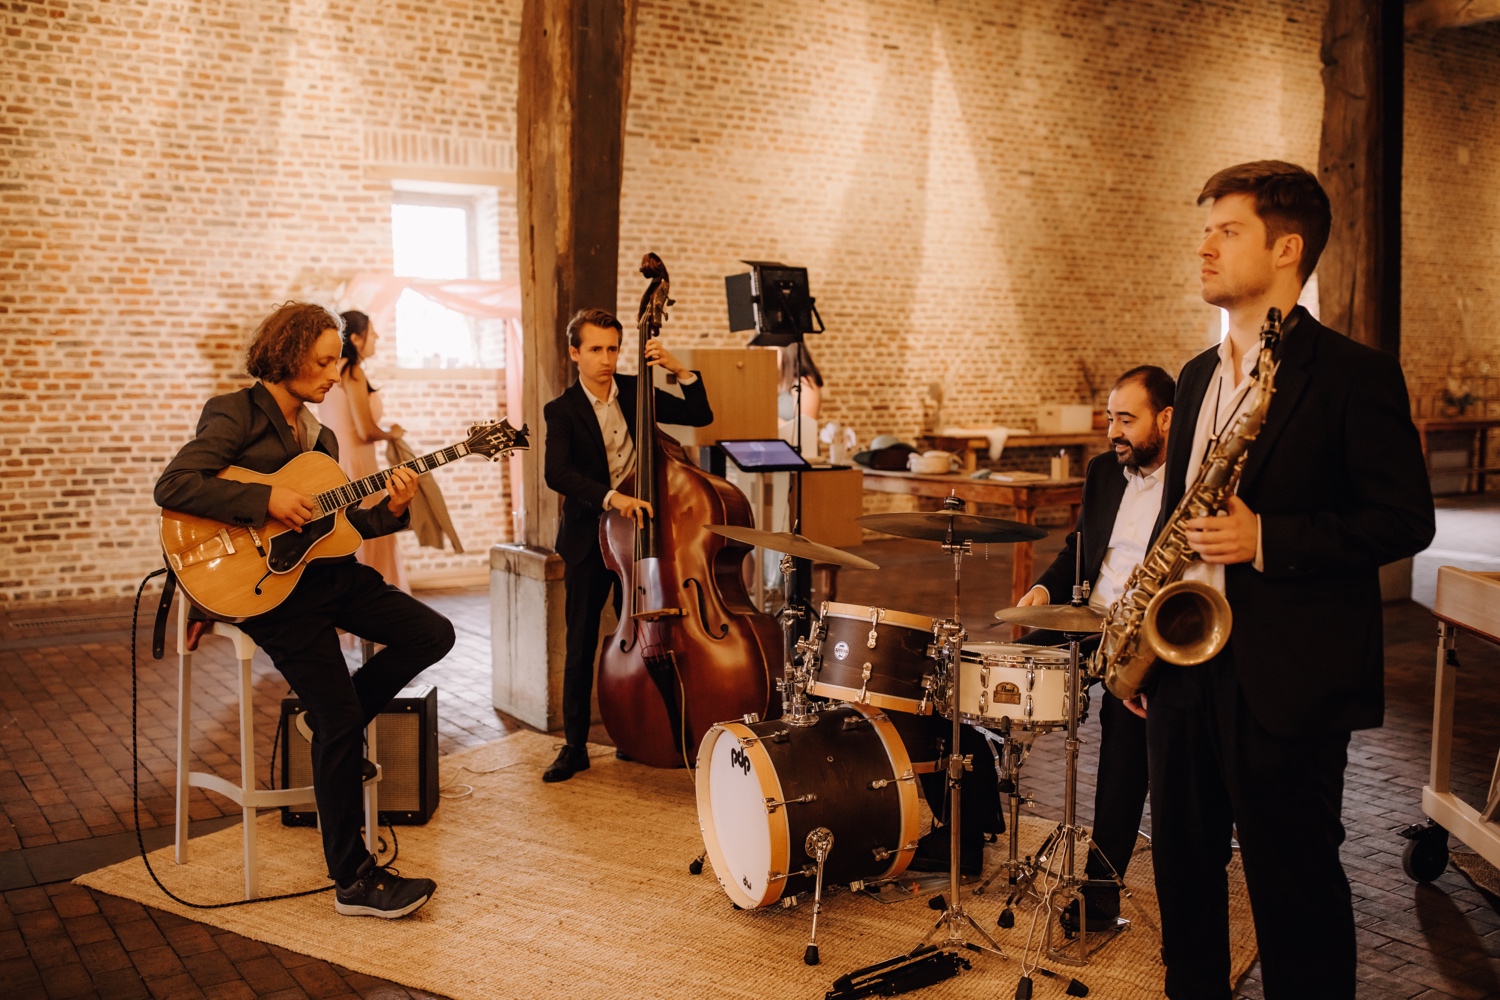 Huwelijksfotograaf Limburg - live band tijdens diner huwelijksfeest